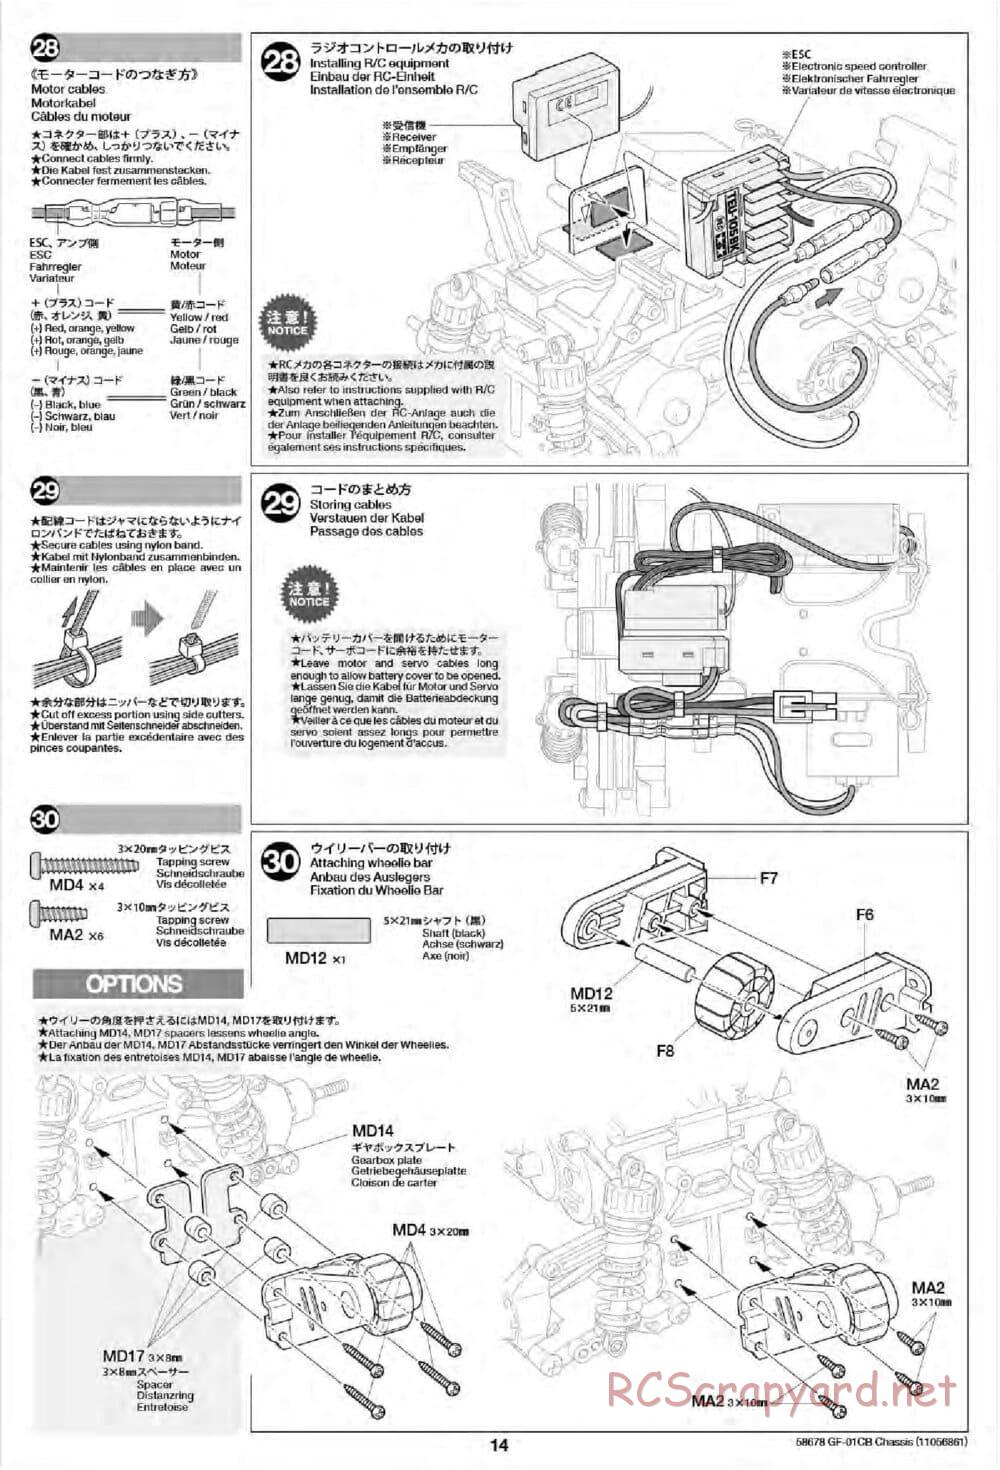 Tamiya - GF-01CB Chassis - Manual - Page 16